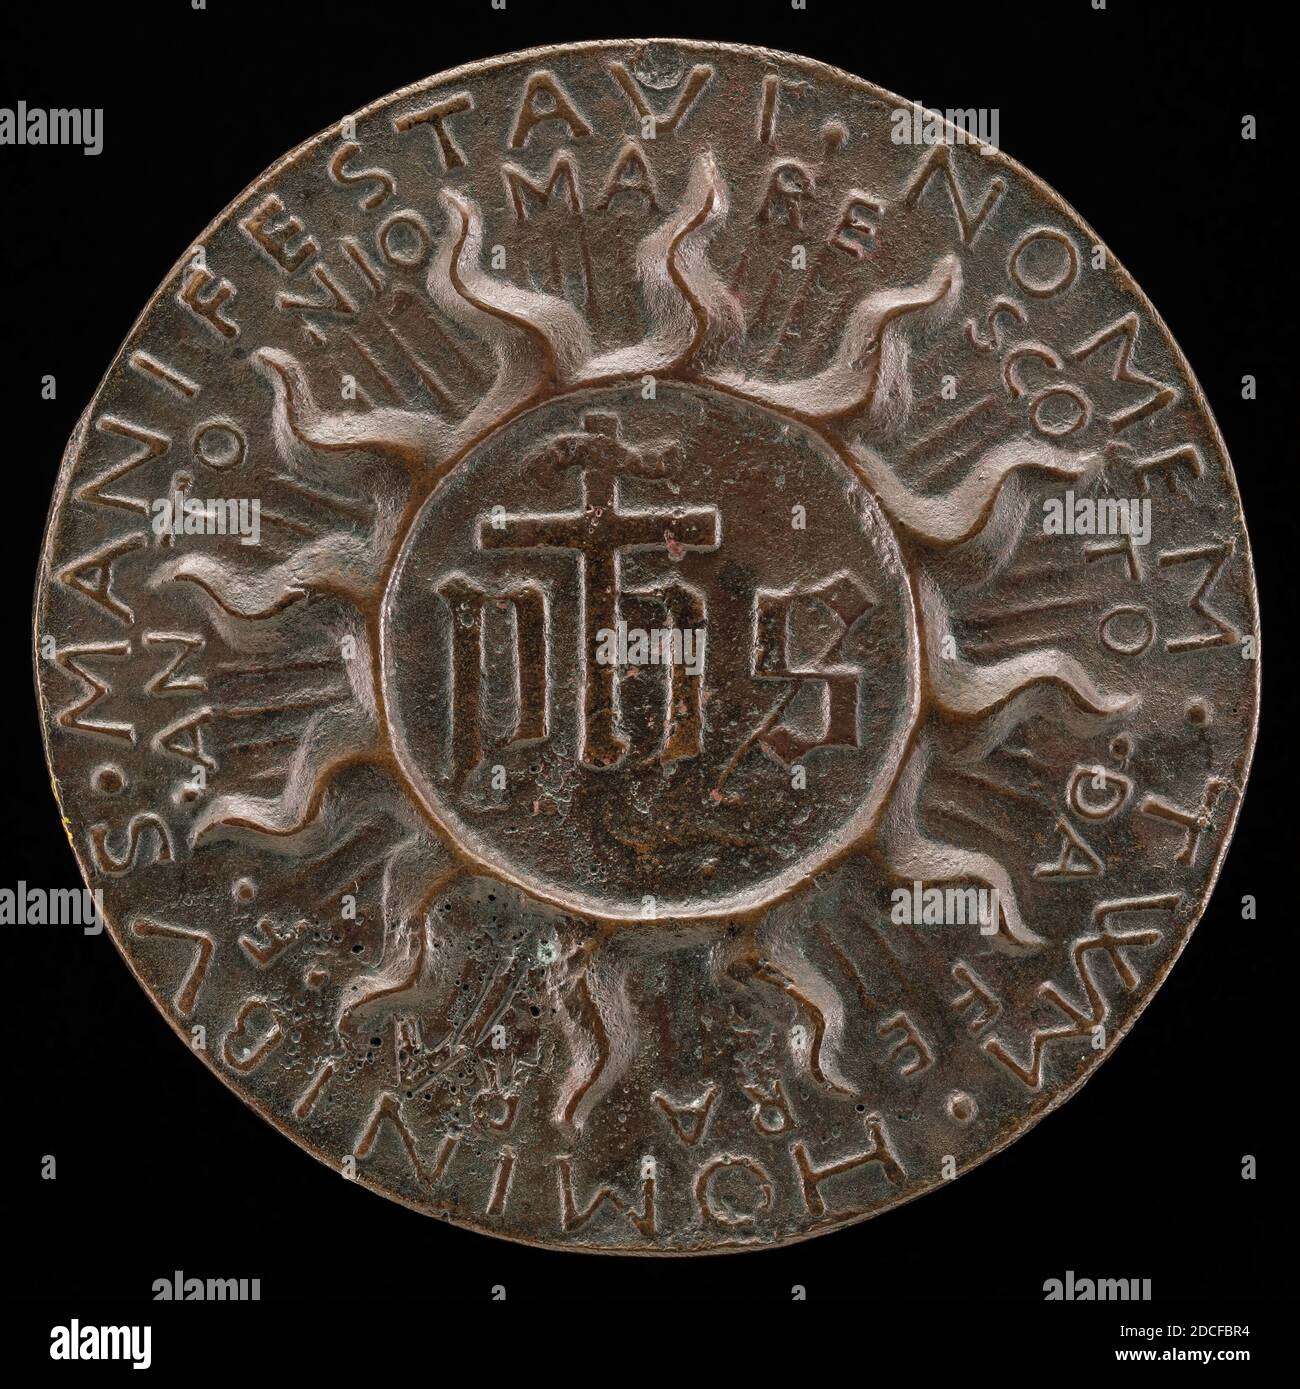 Antonio Marescotti, (artiste), Ferrarese, actif 1444/1462, le trigramme IHS dans un Halo Flaming, c. 1444/1462, bronze/après fonte, hors tout (diamètre): 7.71 cm (3 1/16 in.), poids brut: 139.81 gr (0.308 lb.), axe: 12:00 Banque D'Images